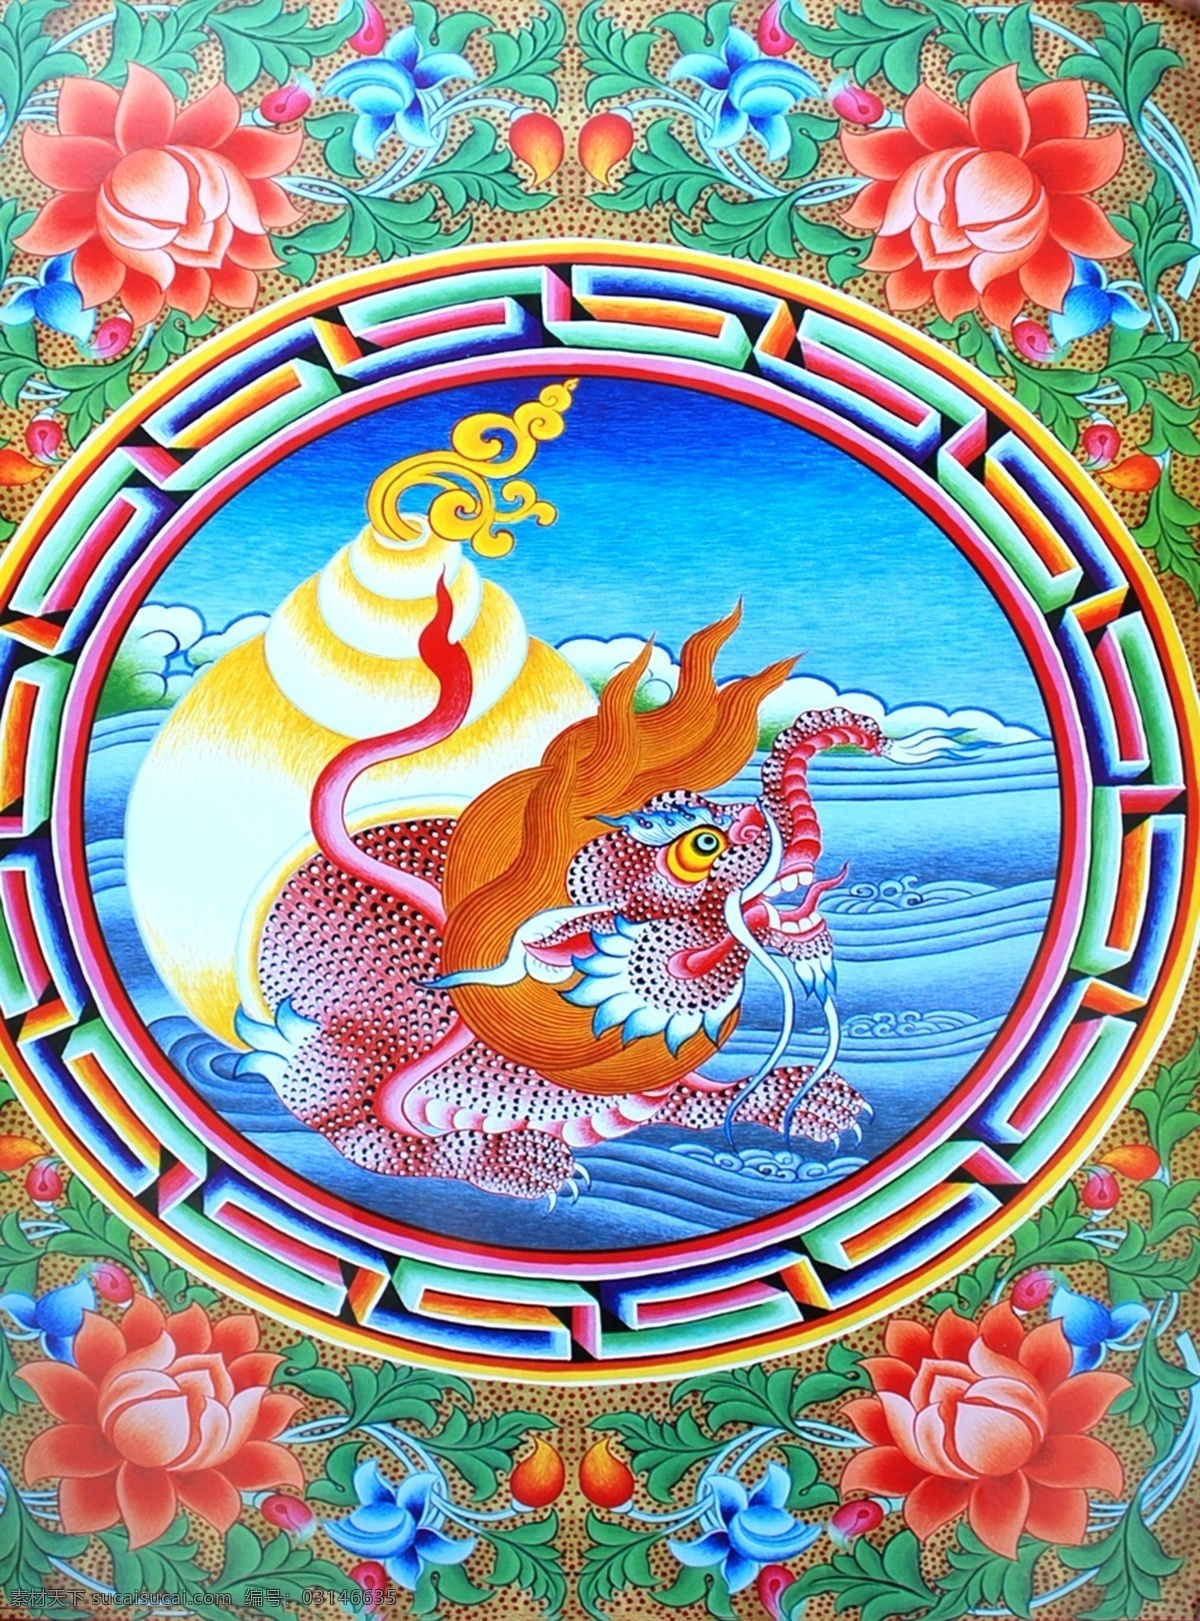 无框画 佛教 手绘 墙画 壁画 卧室画 绘画 吉祥 图案 藏族 宗教 和平 平安 宗教设计 藏族传统图案 龙 绘画书法 文化艺术